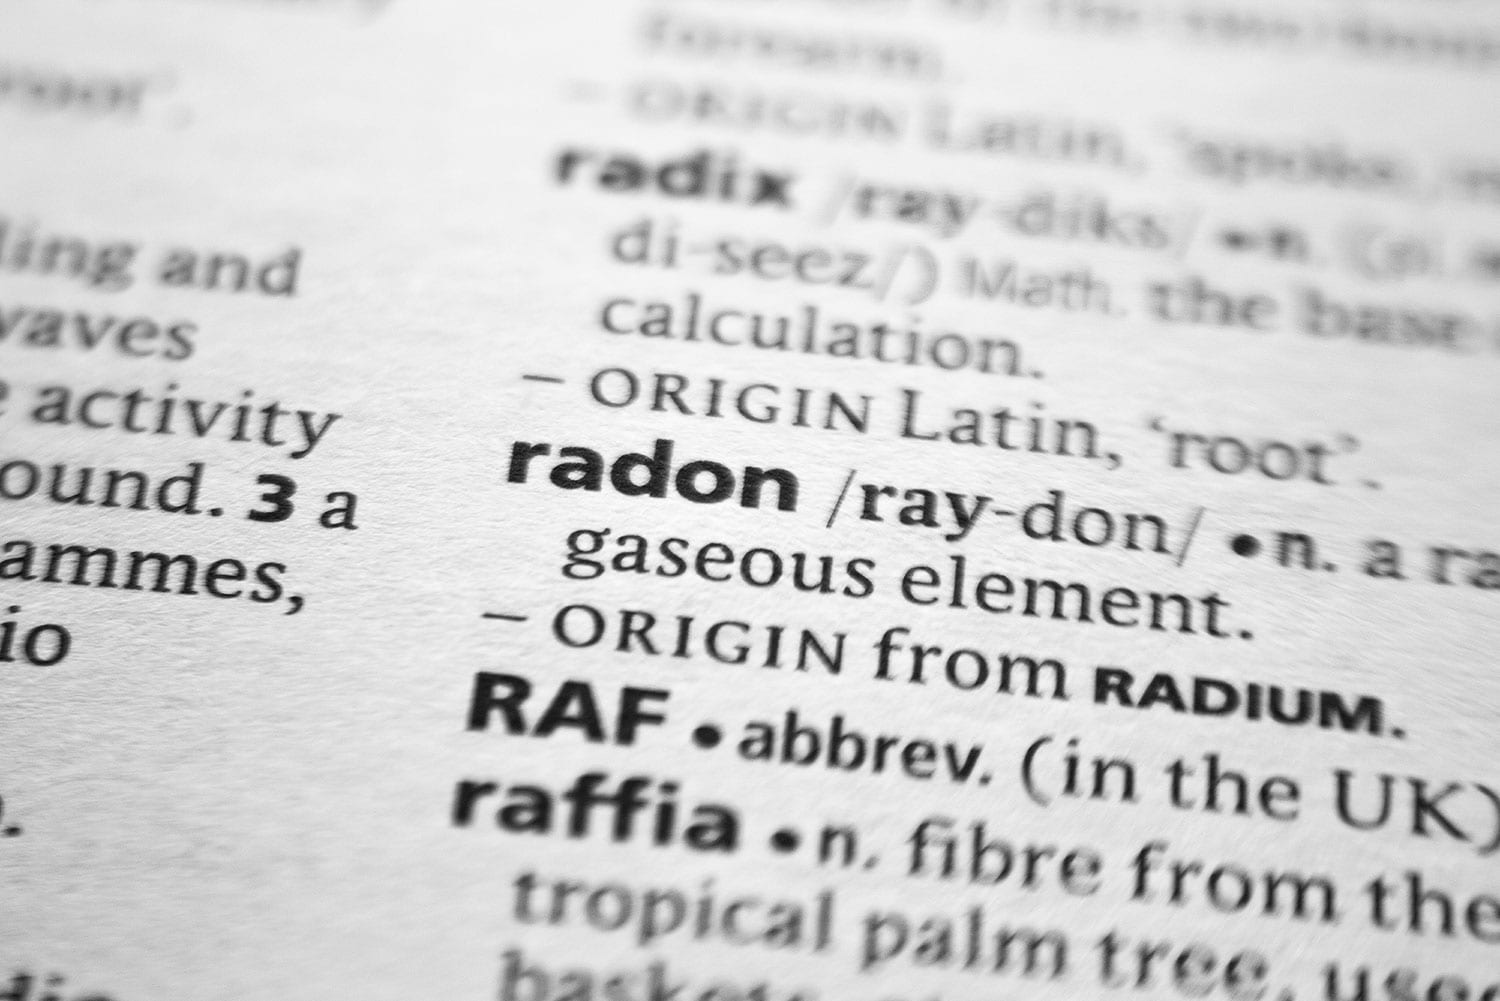 Radon1